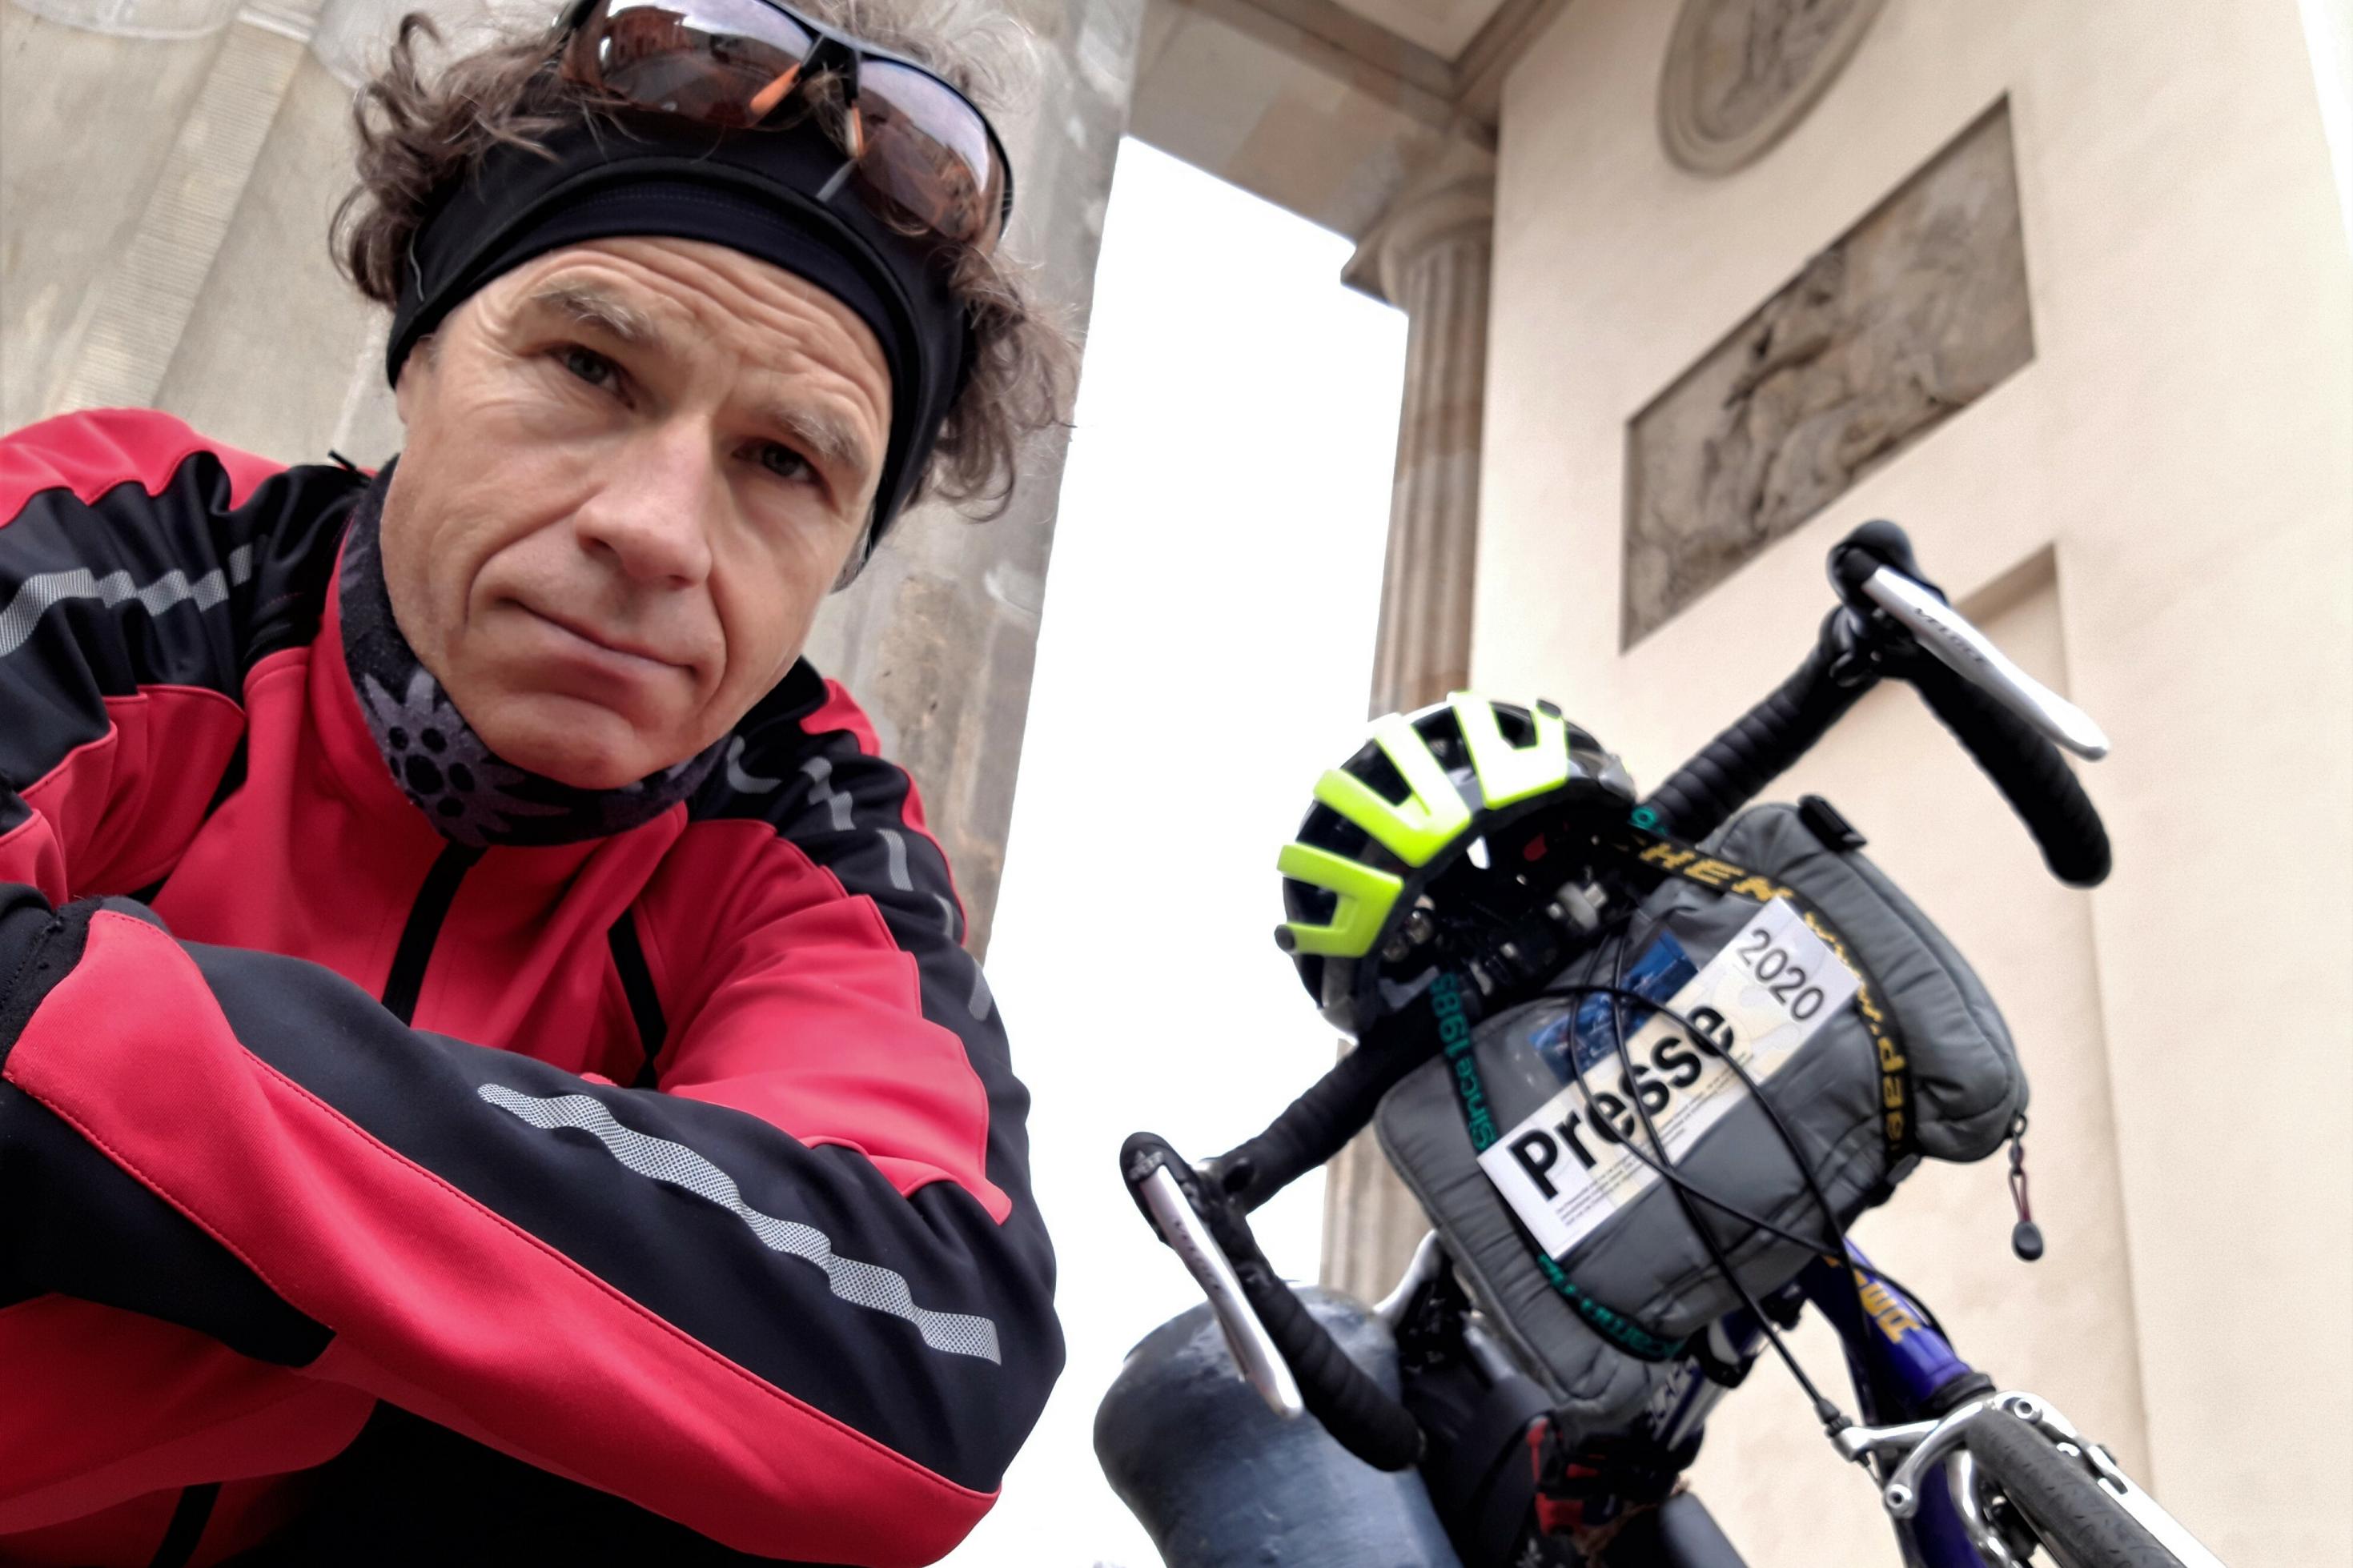 Martin C. Roos schaut in die Kamera, im Hintergrund ein Teil seines Rads und des Brandenburger Tors.